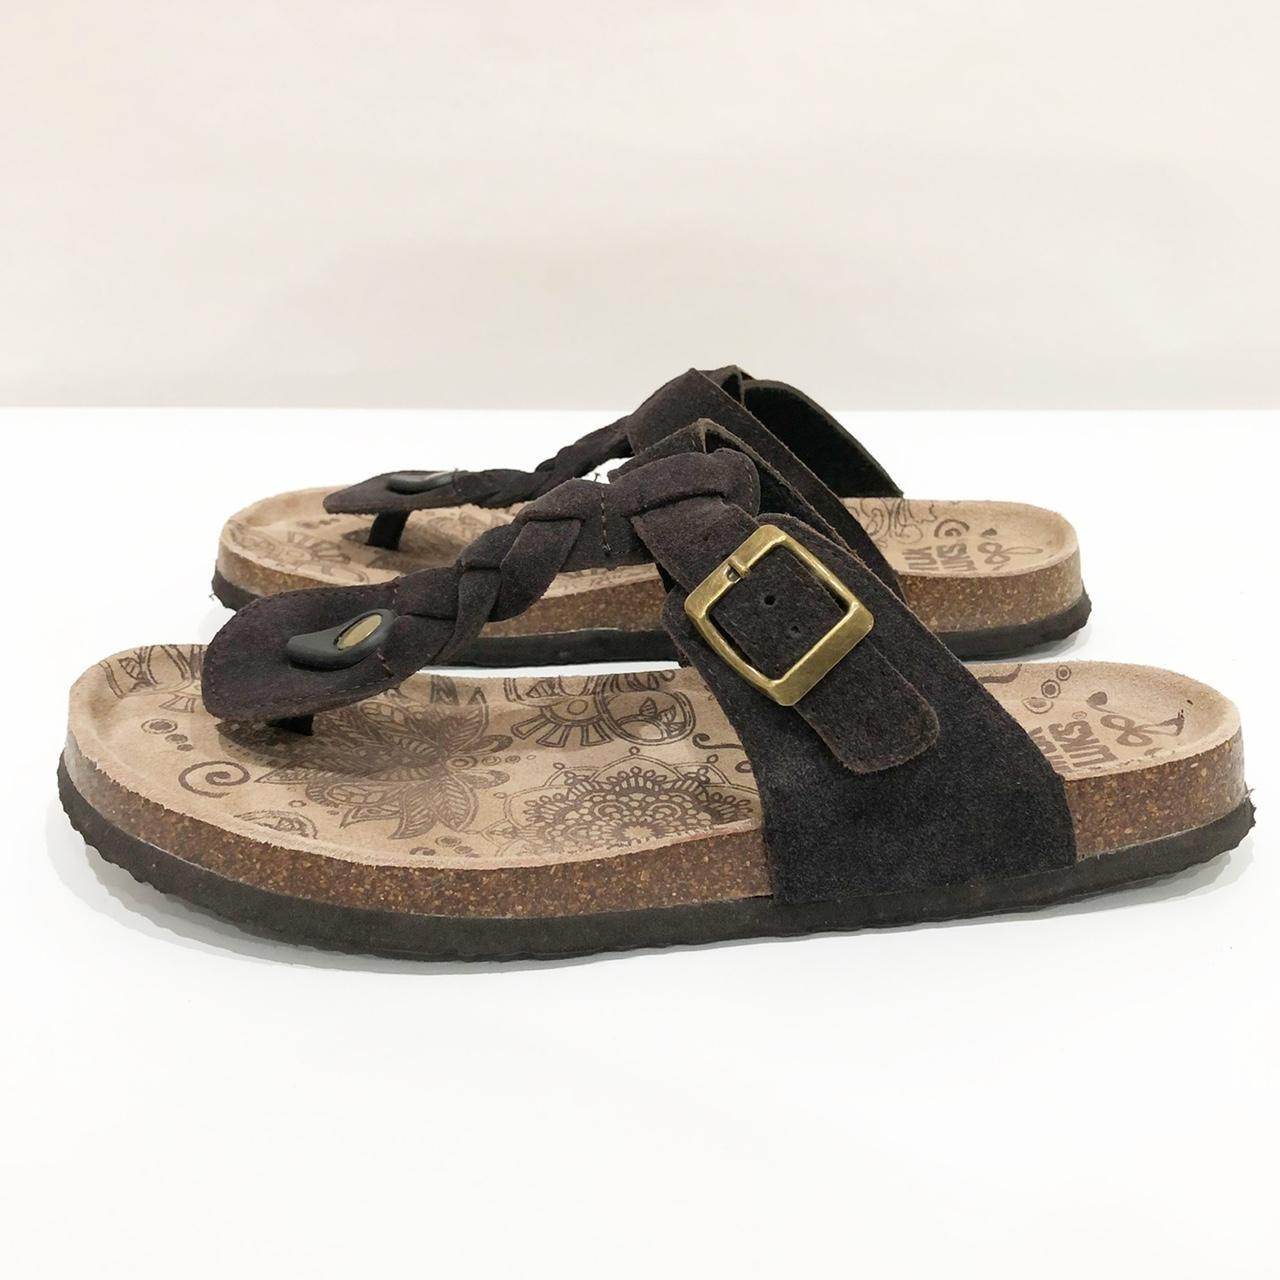 Muk Luks Women's Tan and Brown Sandals (3)